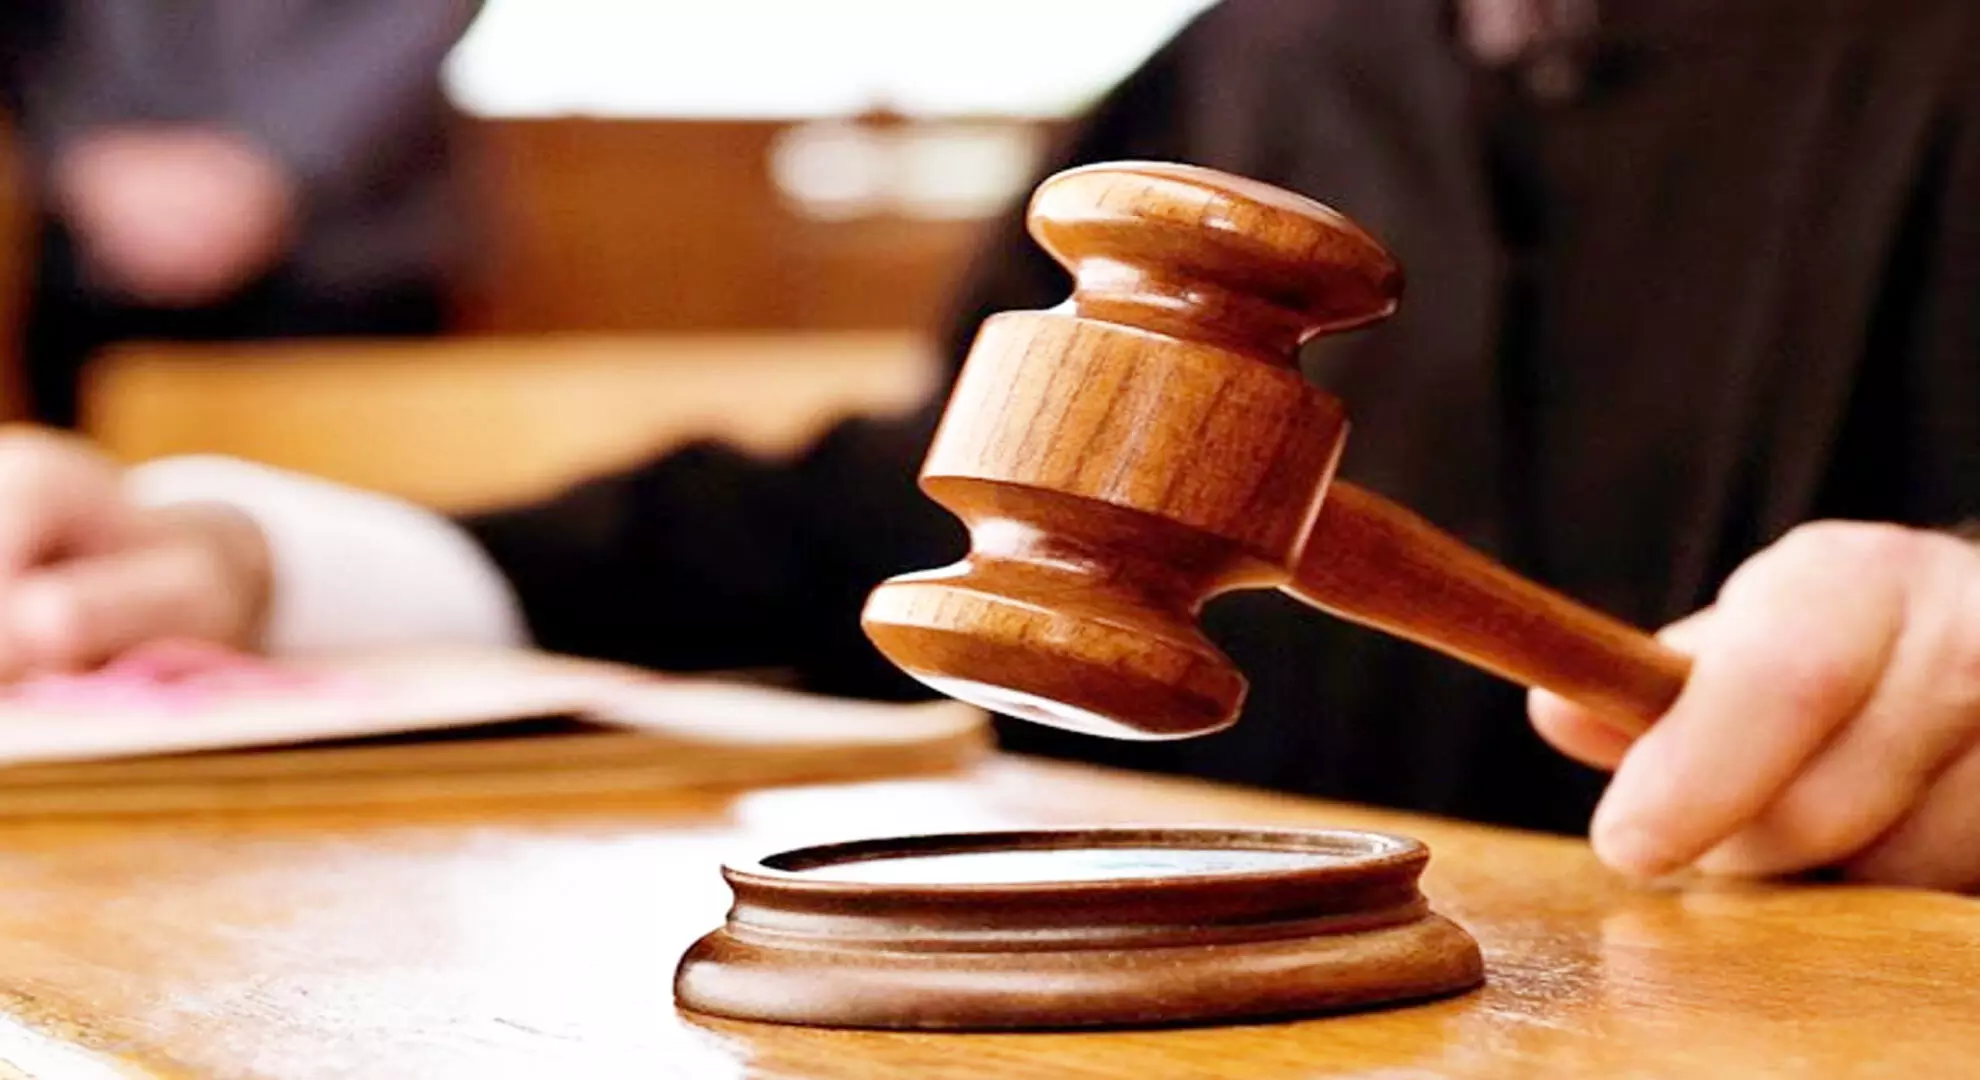 मद्रास उच्च न्यायालय ने हत्या के मामले में कांची संत की सहायता करने के लिए न्यायाधीश की बर्खास्तगी को बरकरार रखा